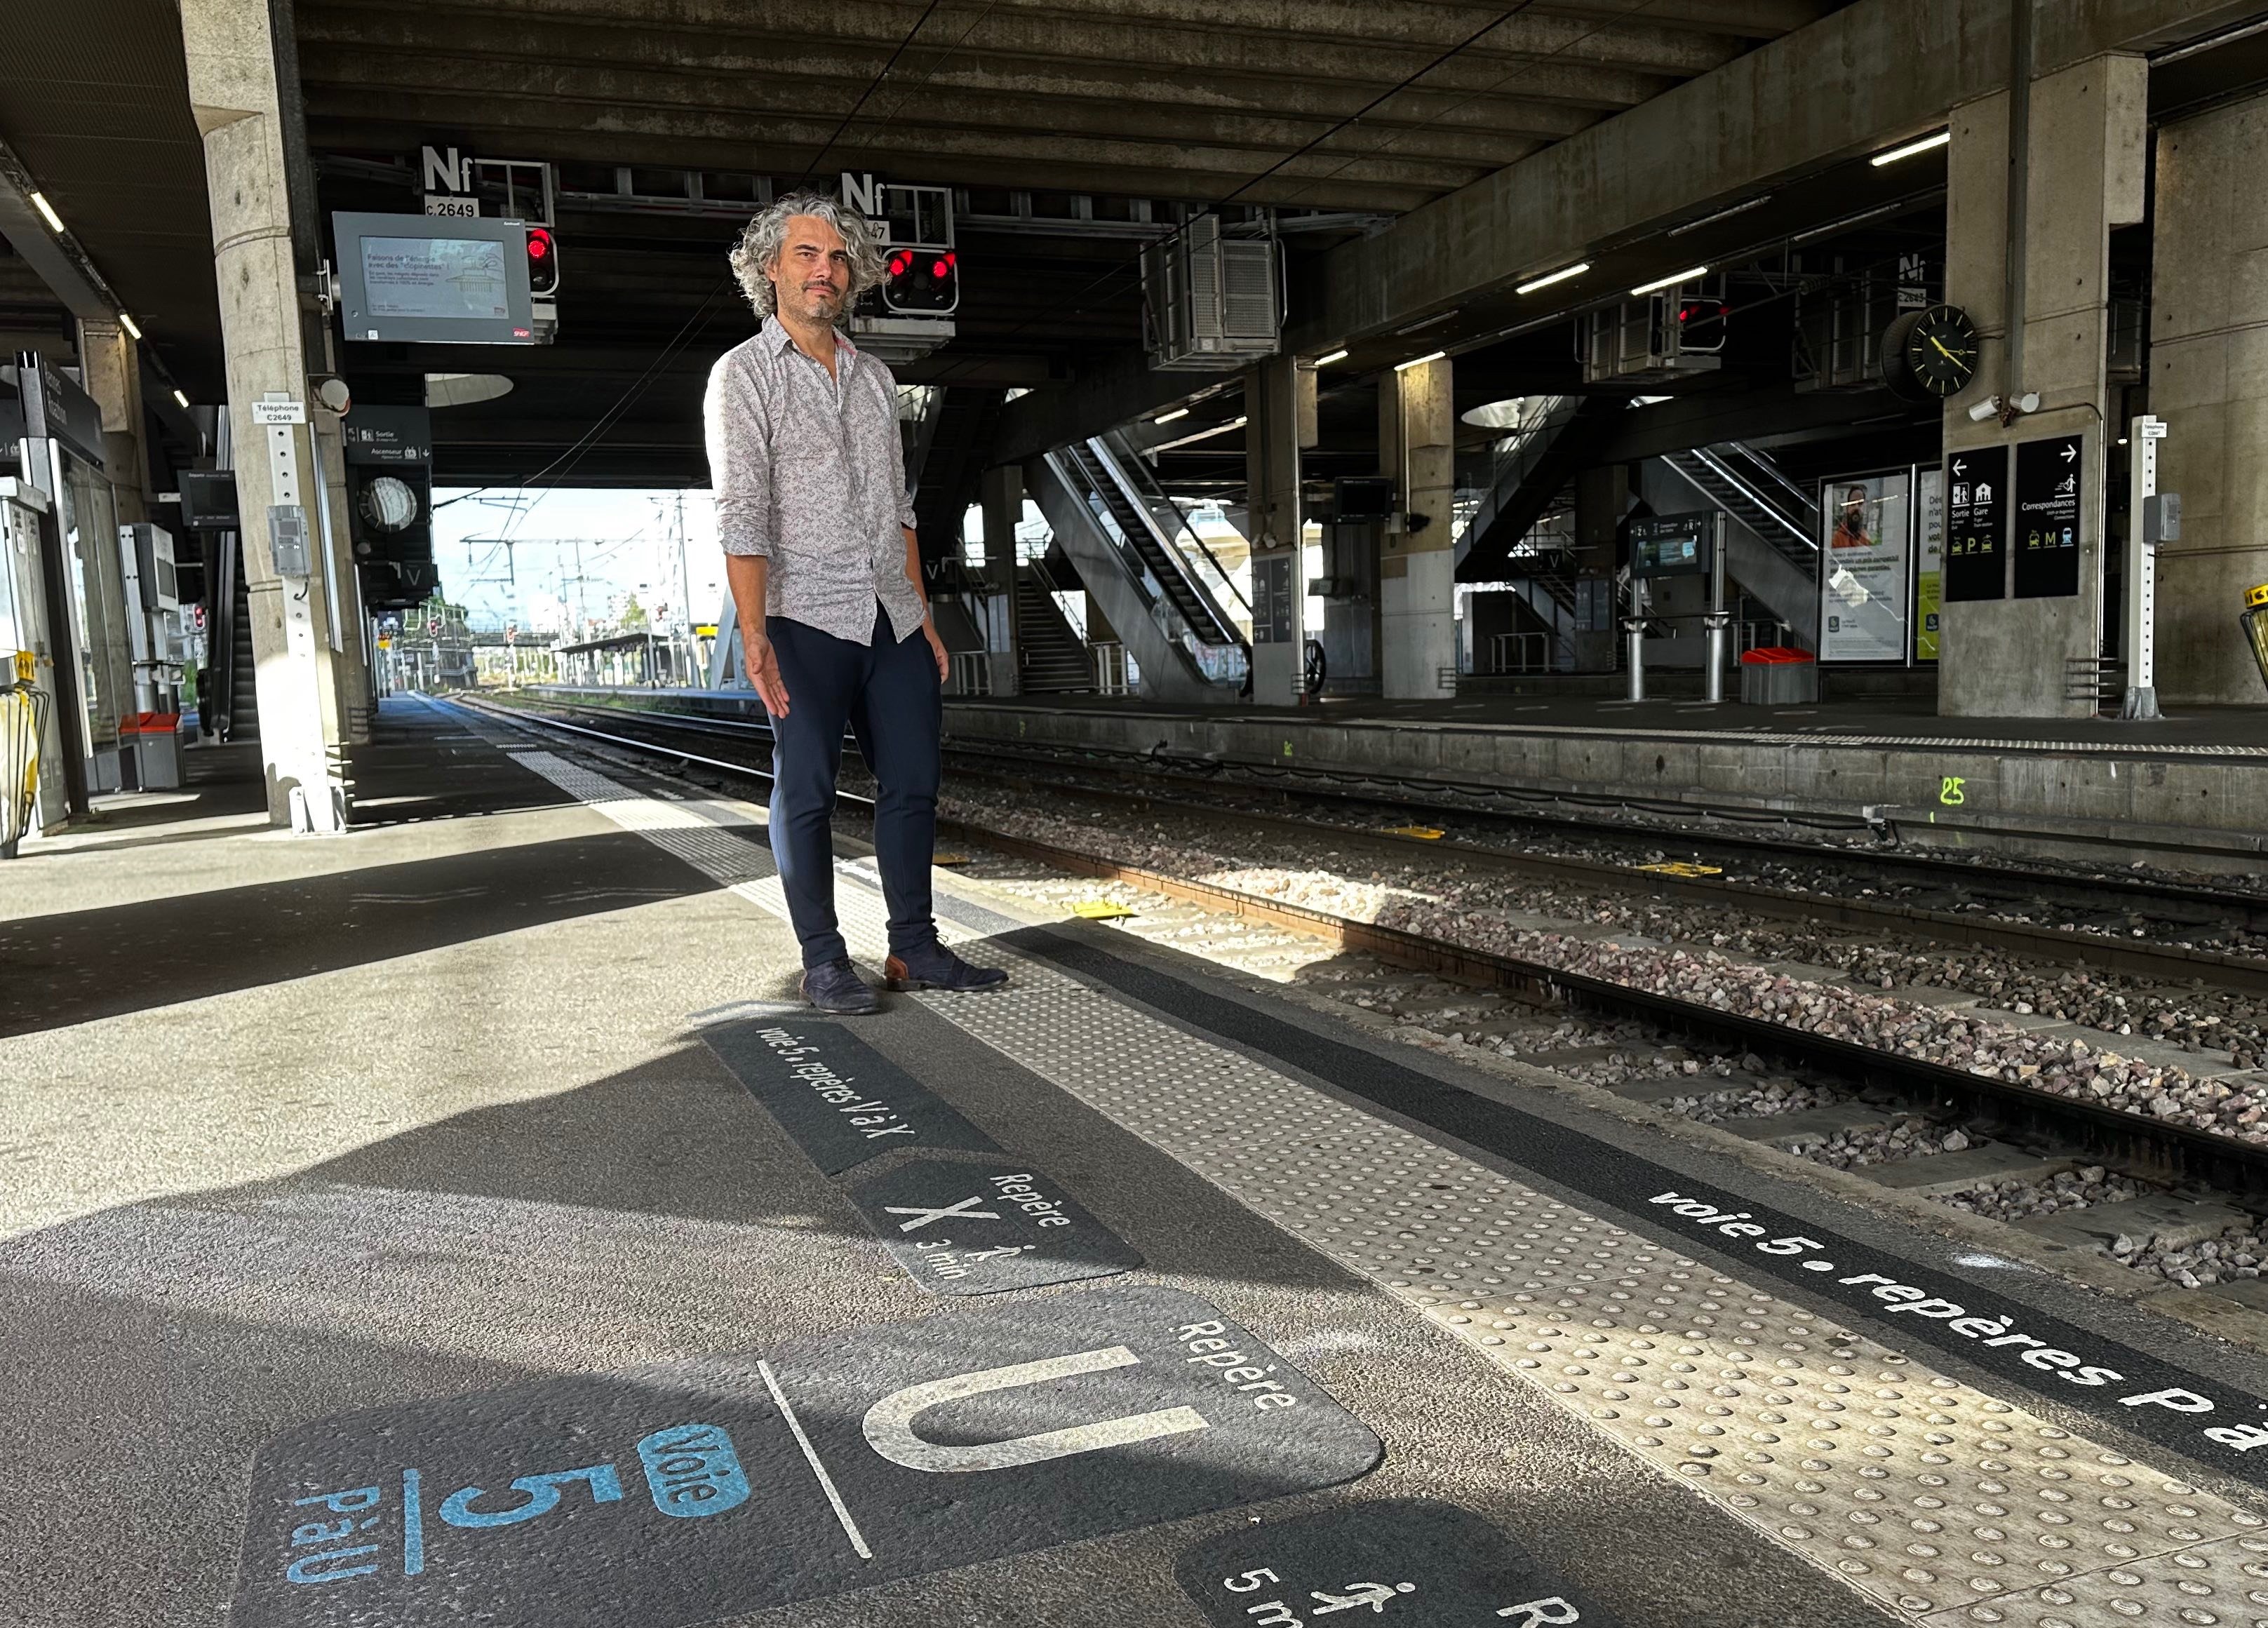 Le « 2TMV» va permettre à la gare de Rennes, qui n’a pas beaucoup de quais par rapport à d’autres villes, de faire face à l'augmentation du trafic, explique Maxime Boisson de SNCF Réseau. LP/Solène Durox